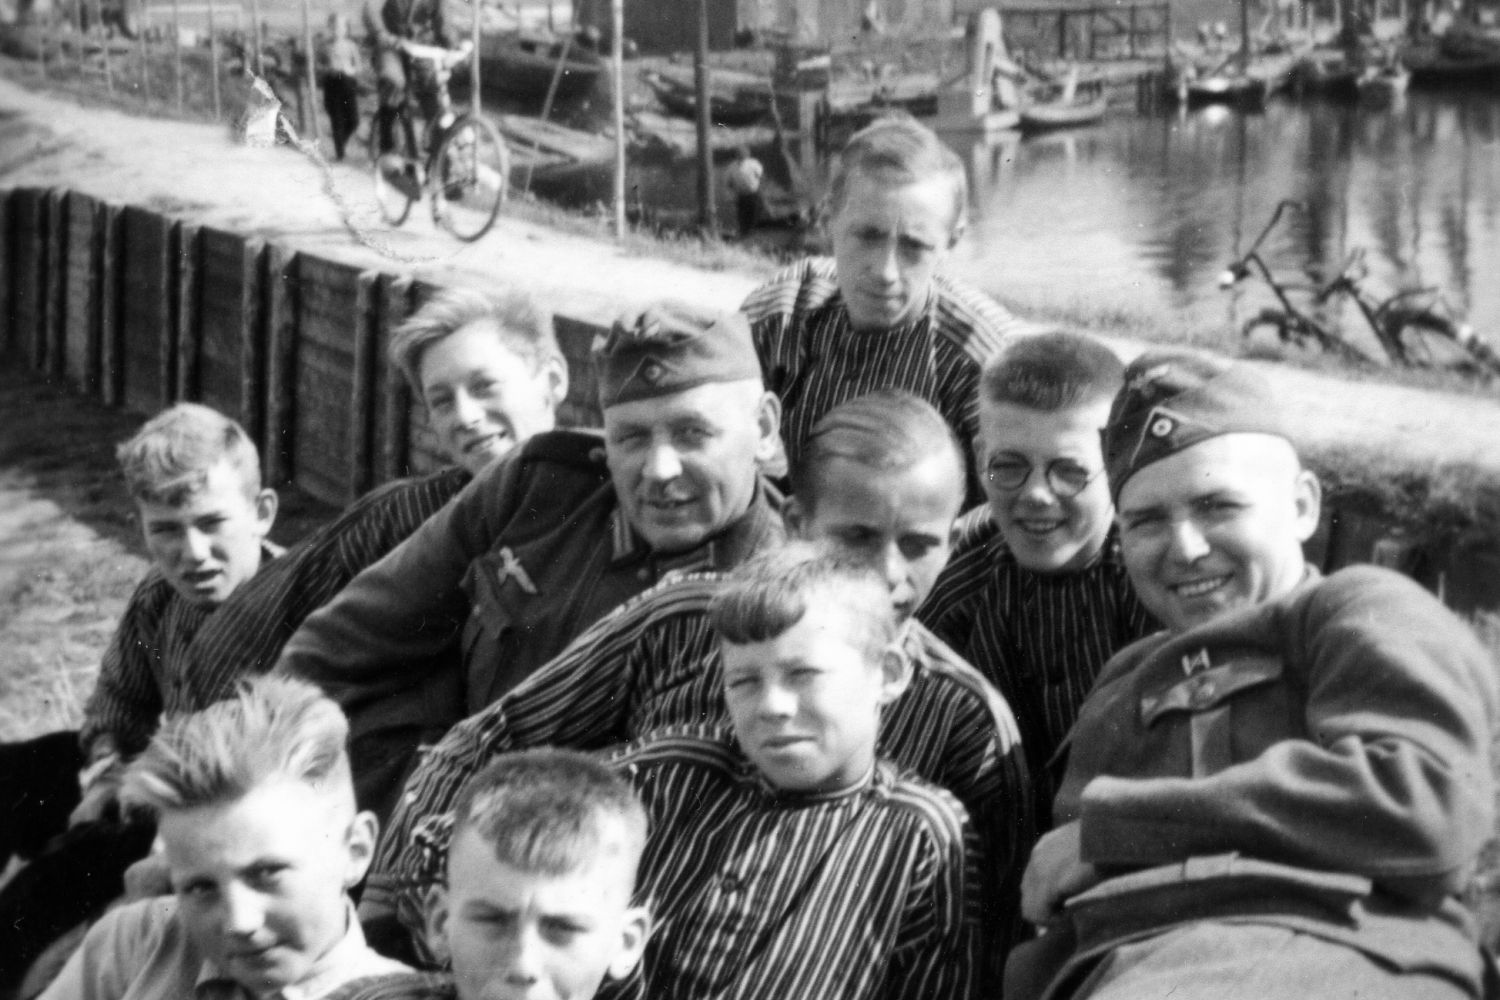 Twee Duitse militairen en acht jongens liggen lachend op de voorgrond. Op de achtergrond liggen enkele botters in de haven en komt een man met pet aanfietsen.